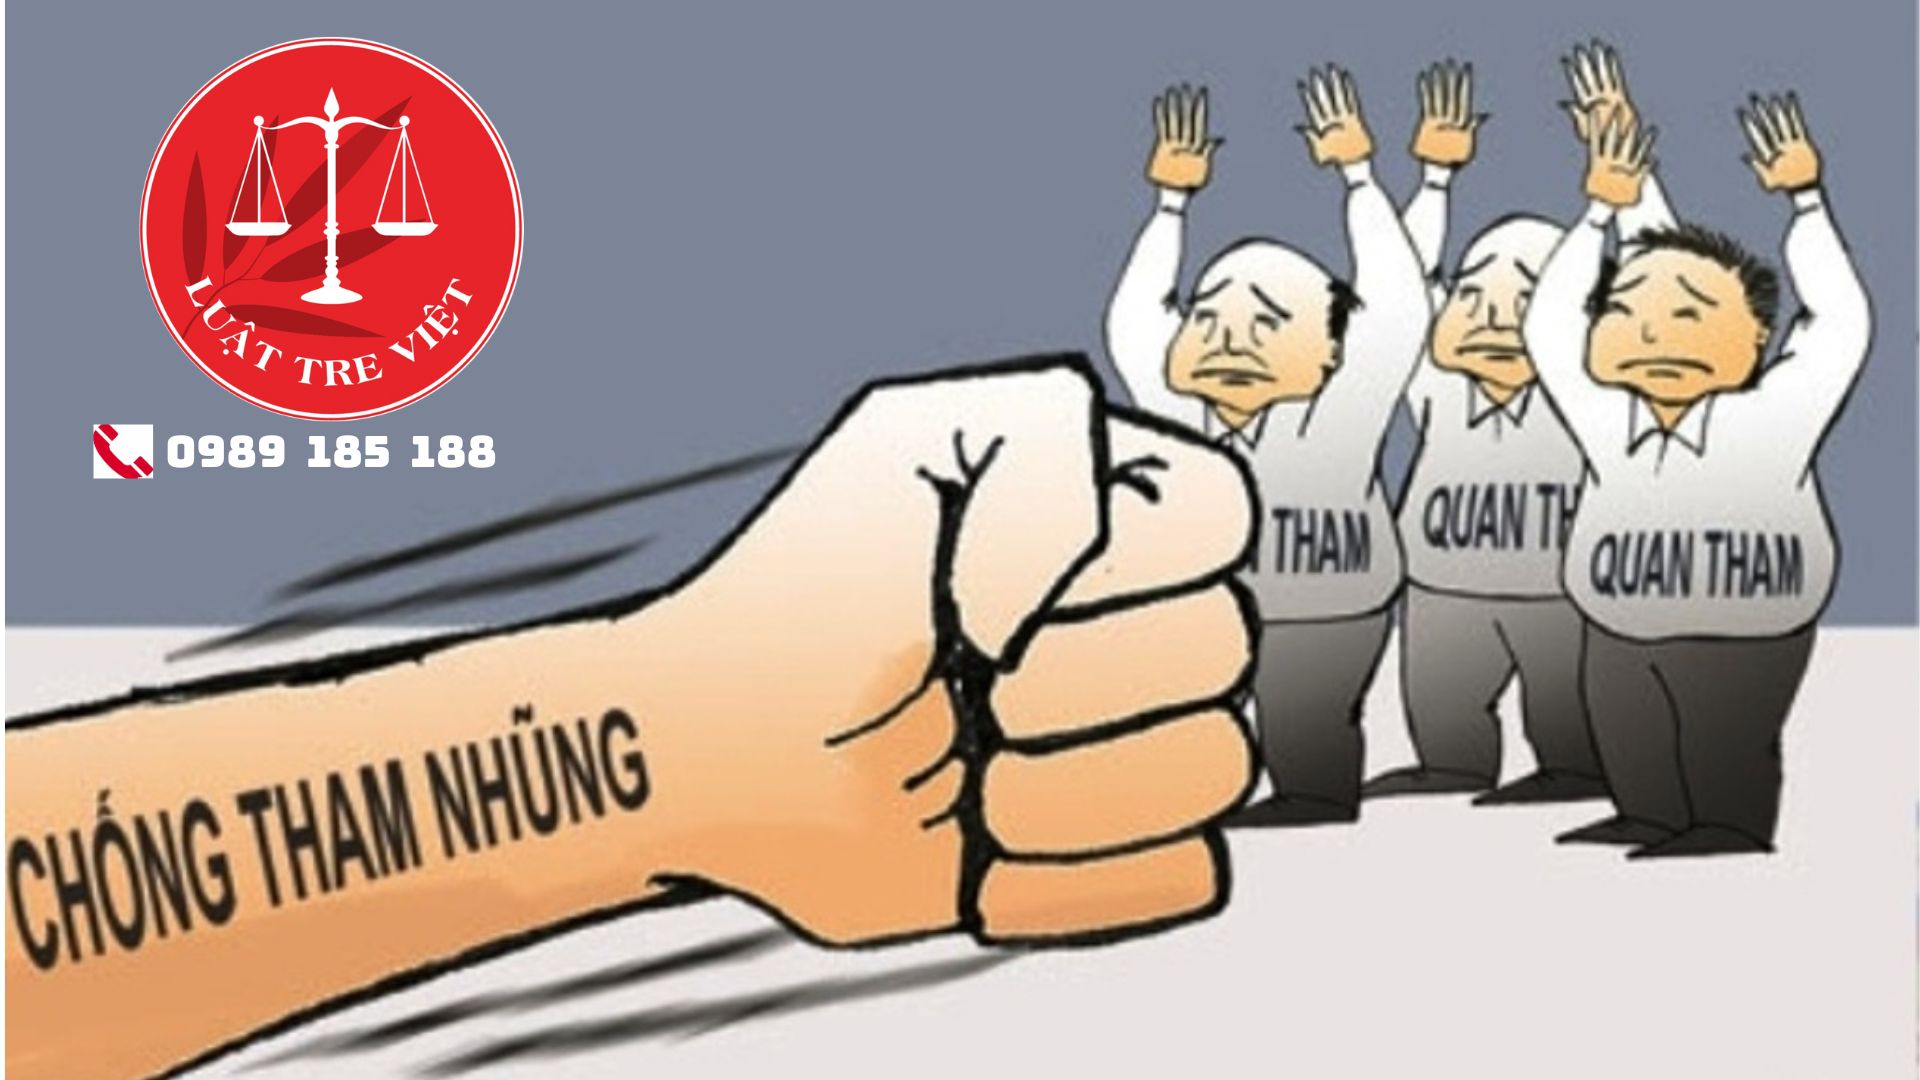 Các loại tội phạm về tham nhũng (quan tham) hay mắc phải trong pháp luật hình sự Việt Nam.